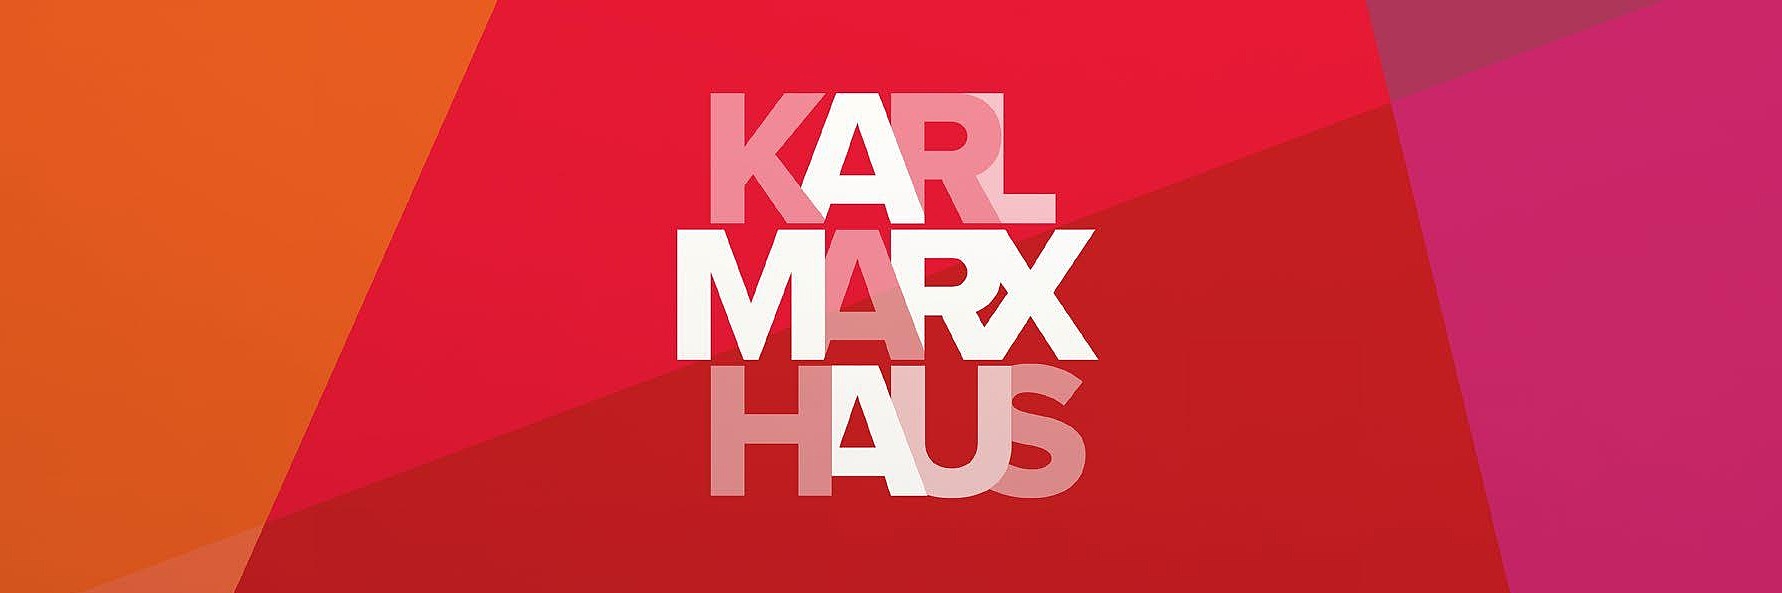 Ein Bildausschnitt des offiziellen Logos des Museum Karl-Marx-Haus. Im Hintergrund sind verschiedene Farbfelder entsprechend des Corporate Designs zu sehen.